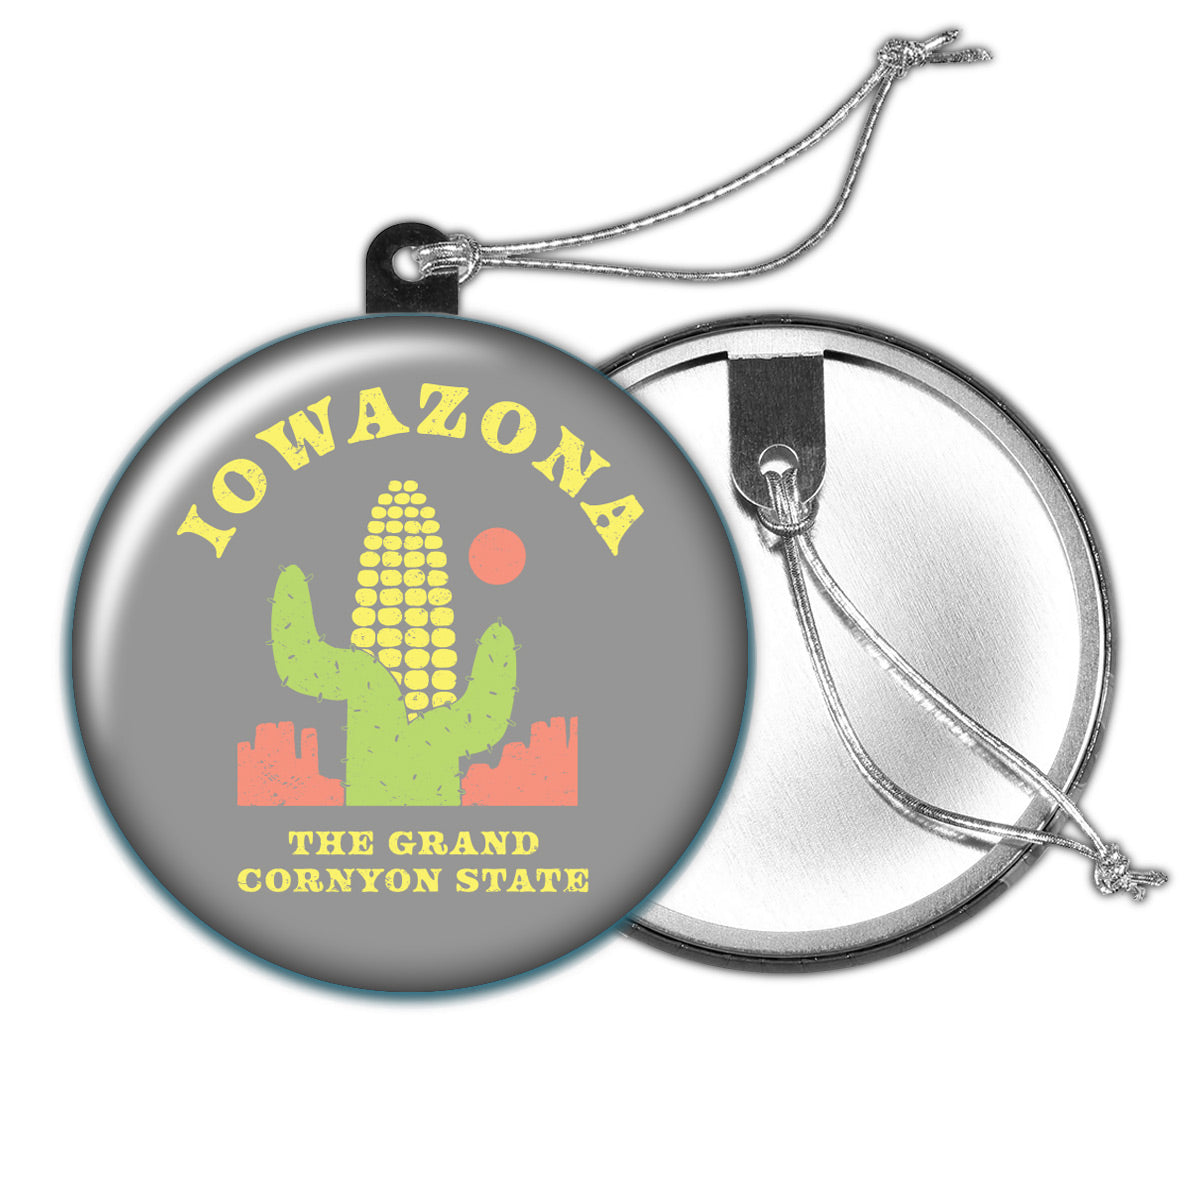 Iowazona Holiday Ornament - Bozz Prints